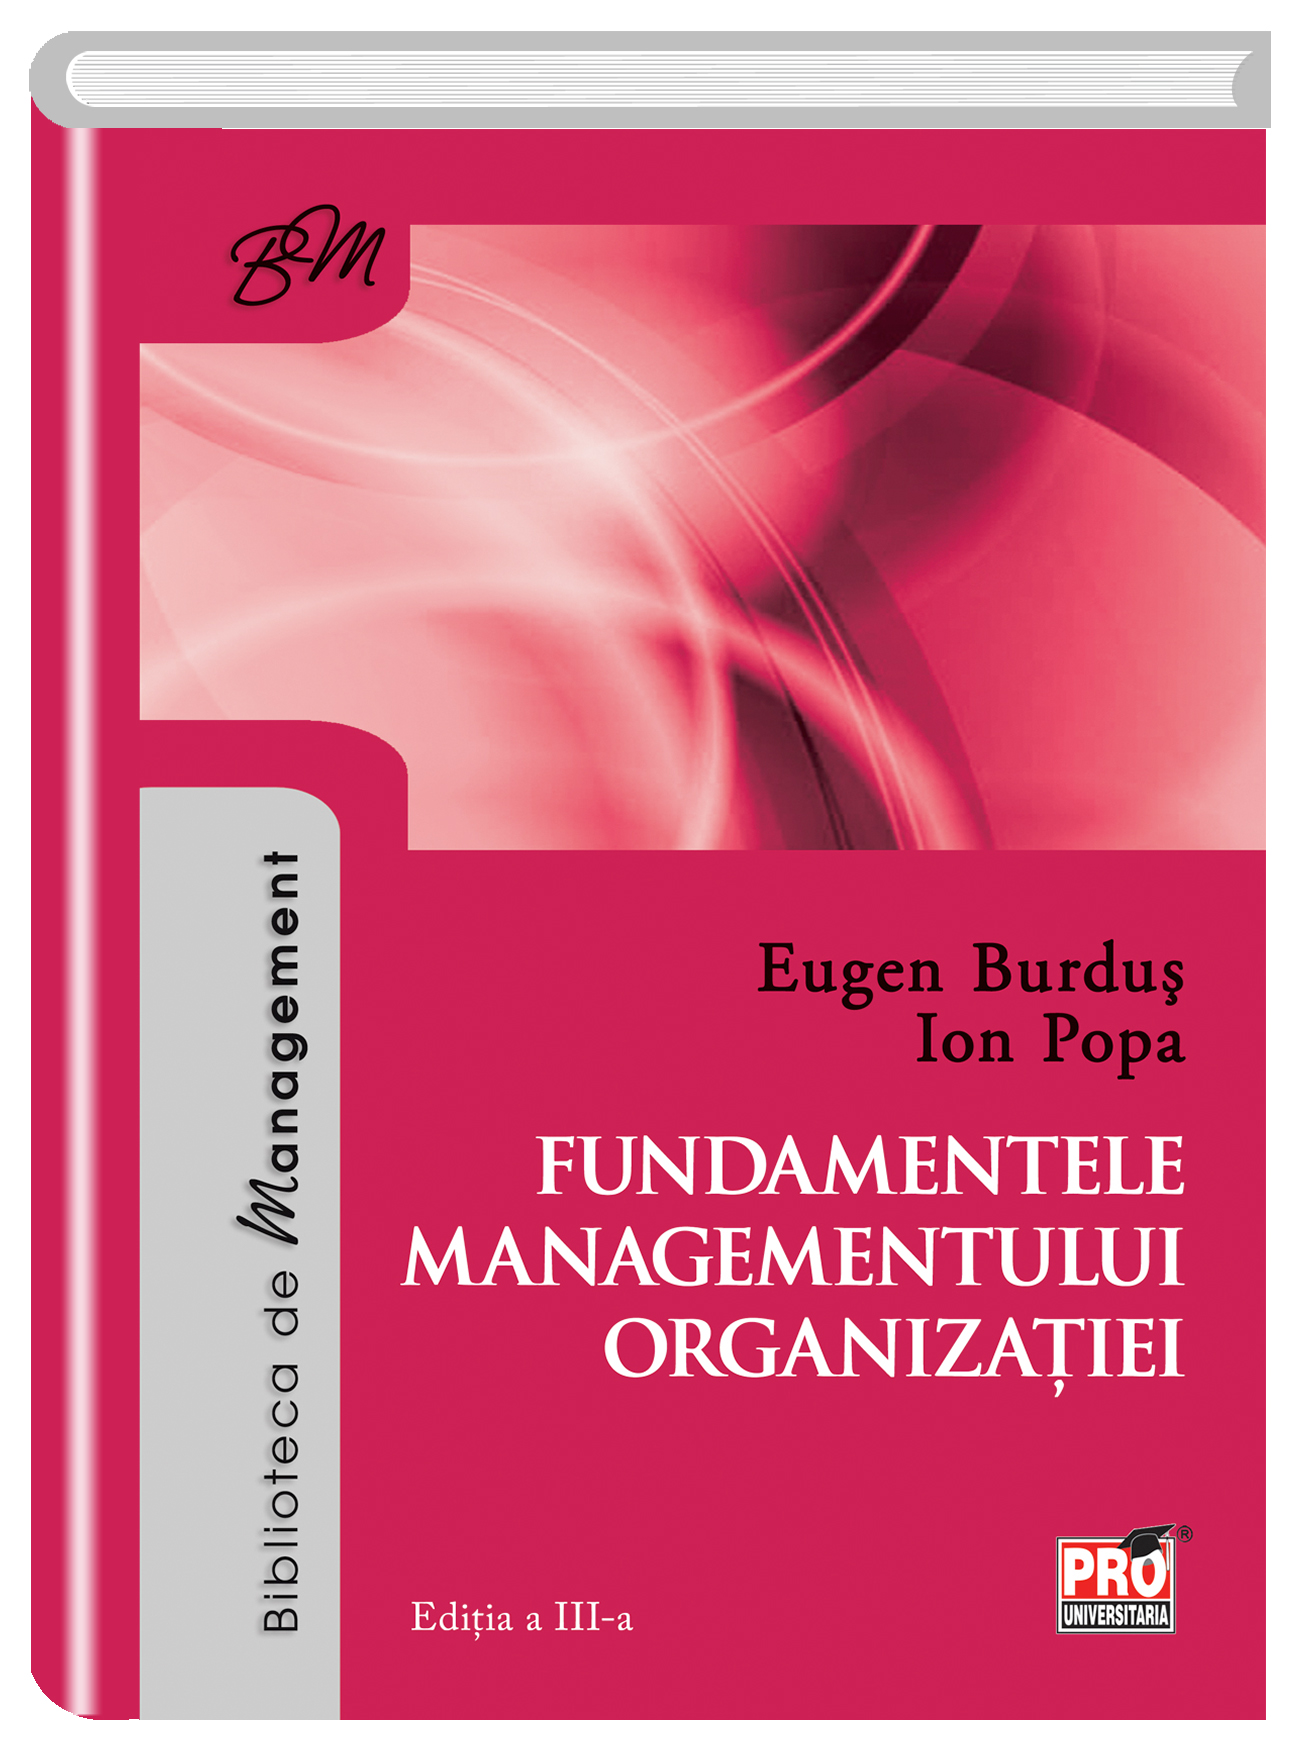 Fundamentele managementului organizatiei | Eugen Burdus, Ion Popa carturesti.ro poza bestsellers.ro